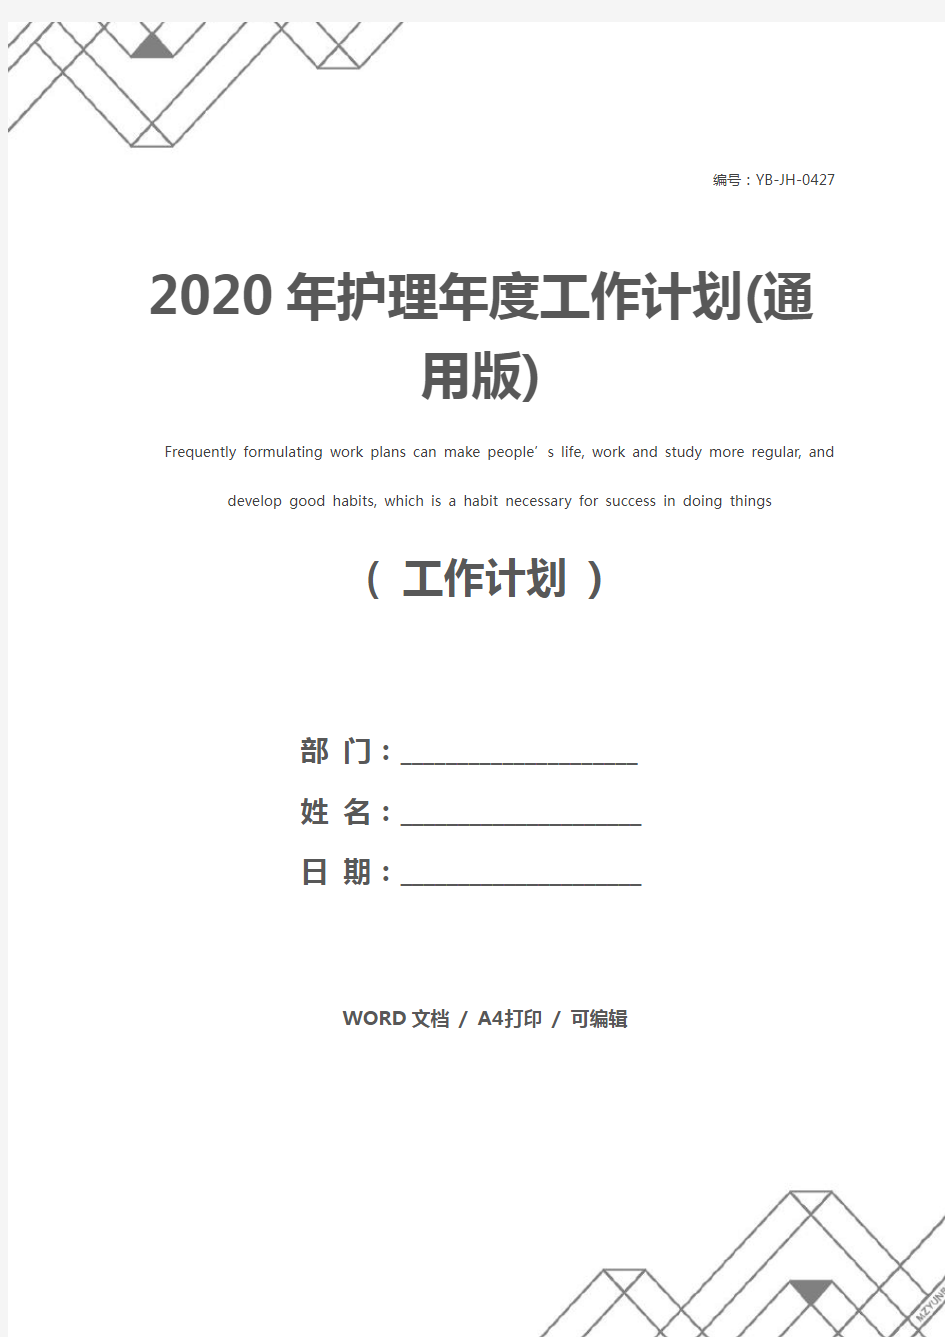 2020年护理年度工作计划(通用版)